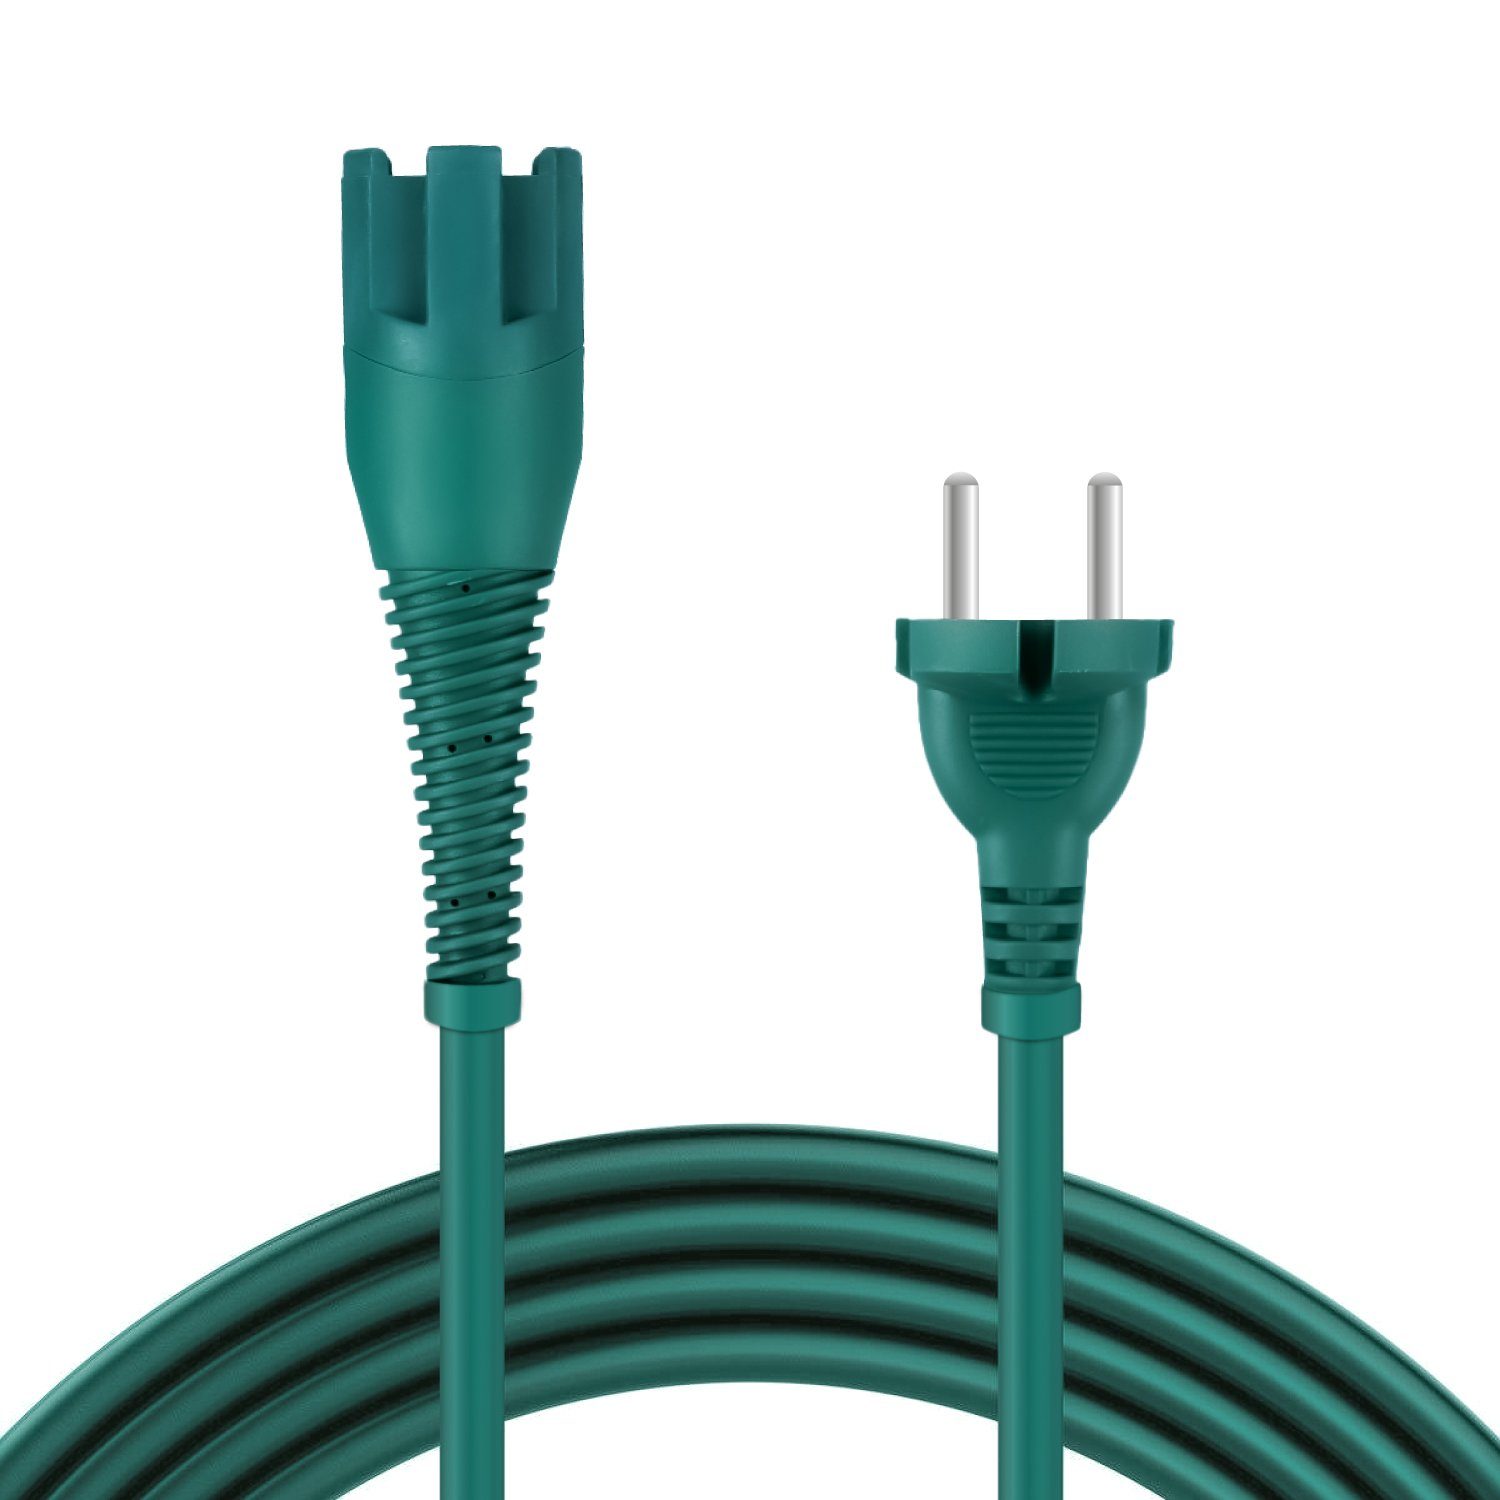 McFilter Kabel passend für Vorwerk Kobold 130, 130 SC, 131, 131 SC Stromkabel, Typ EF (Konturenstecker), (1000 cm), Staubsauger Kabel